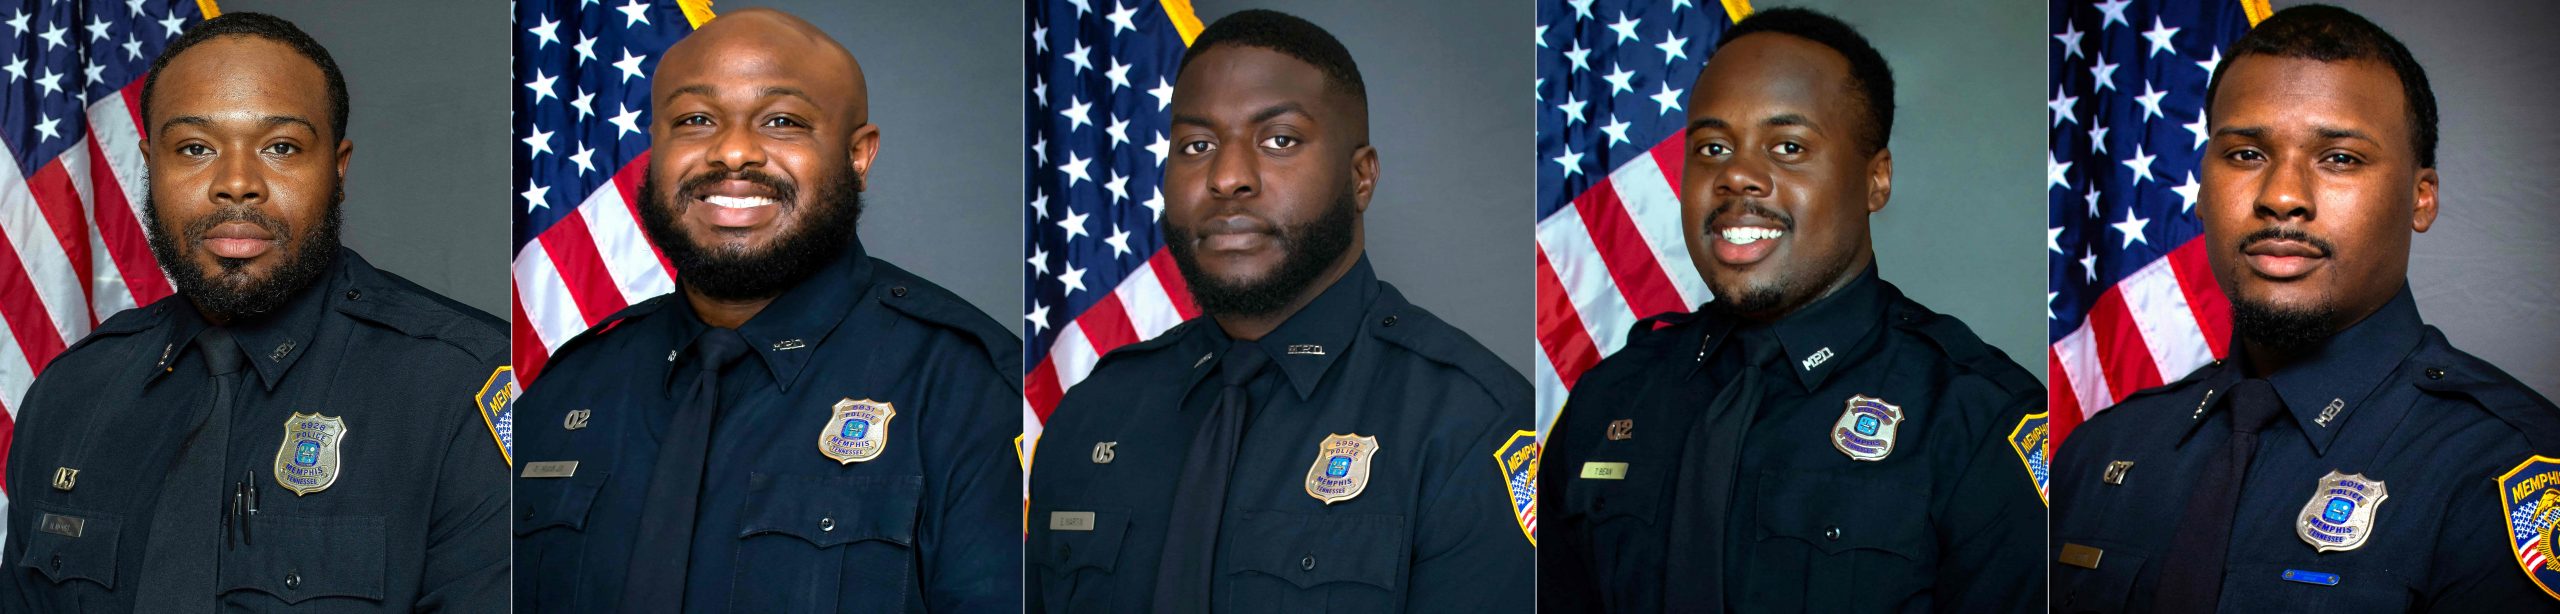 美国29岁黑人被捕后遭殴打致死　5名警员被控二级谋杀